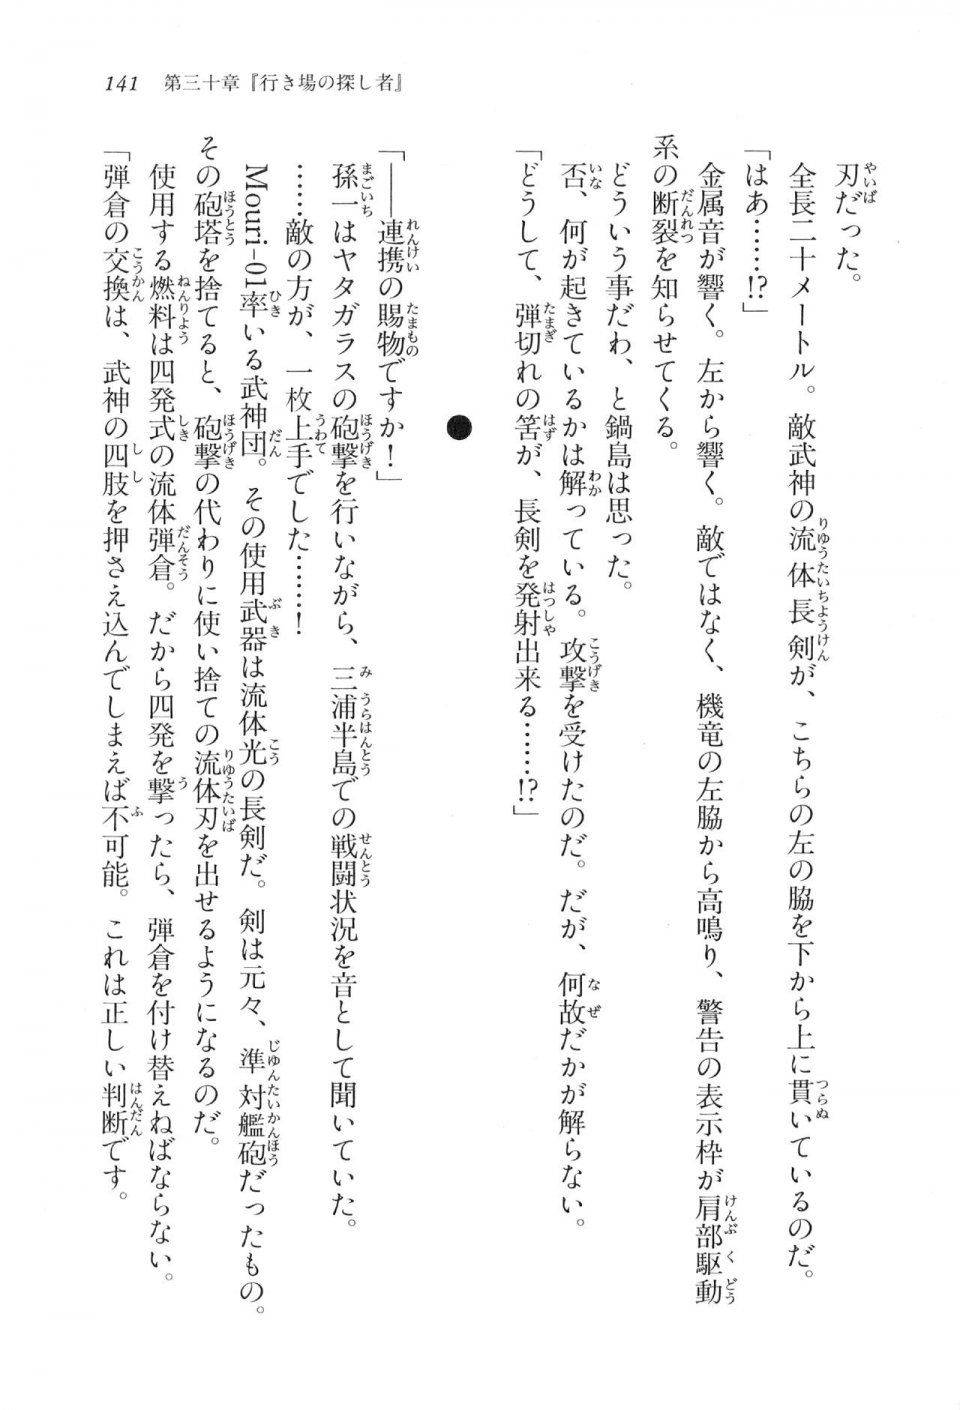 Kyoukai Senjou no Horizon LN Vol 17(7B) - Photo #141